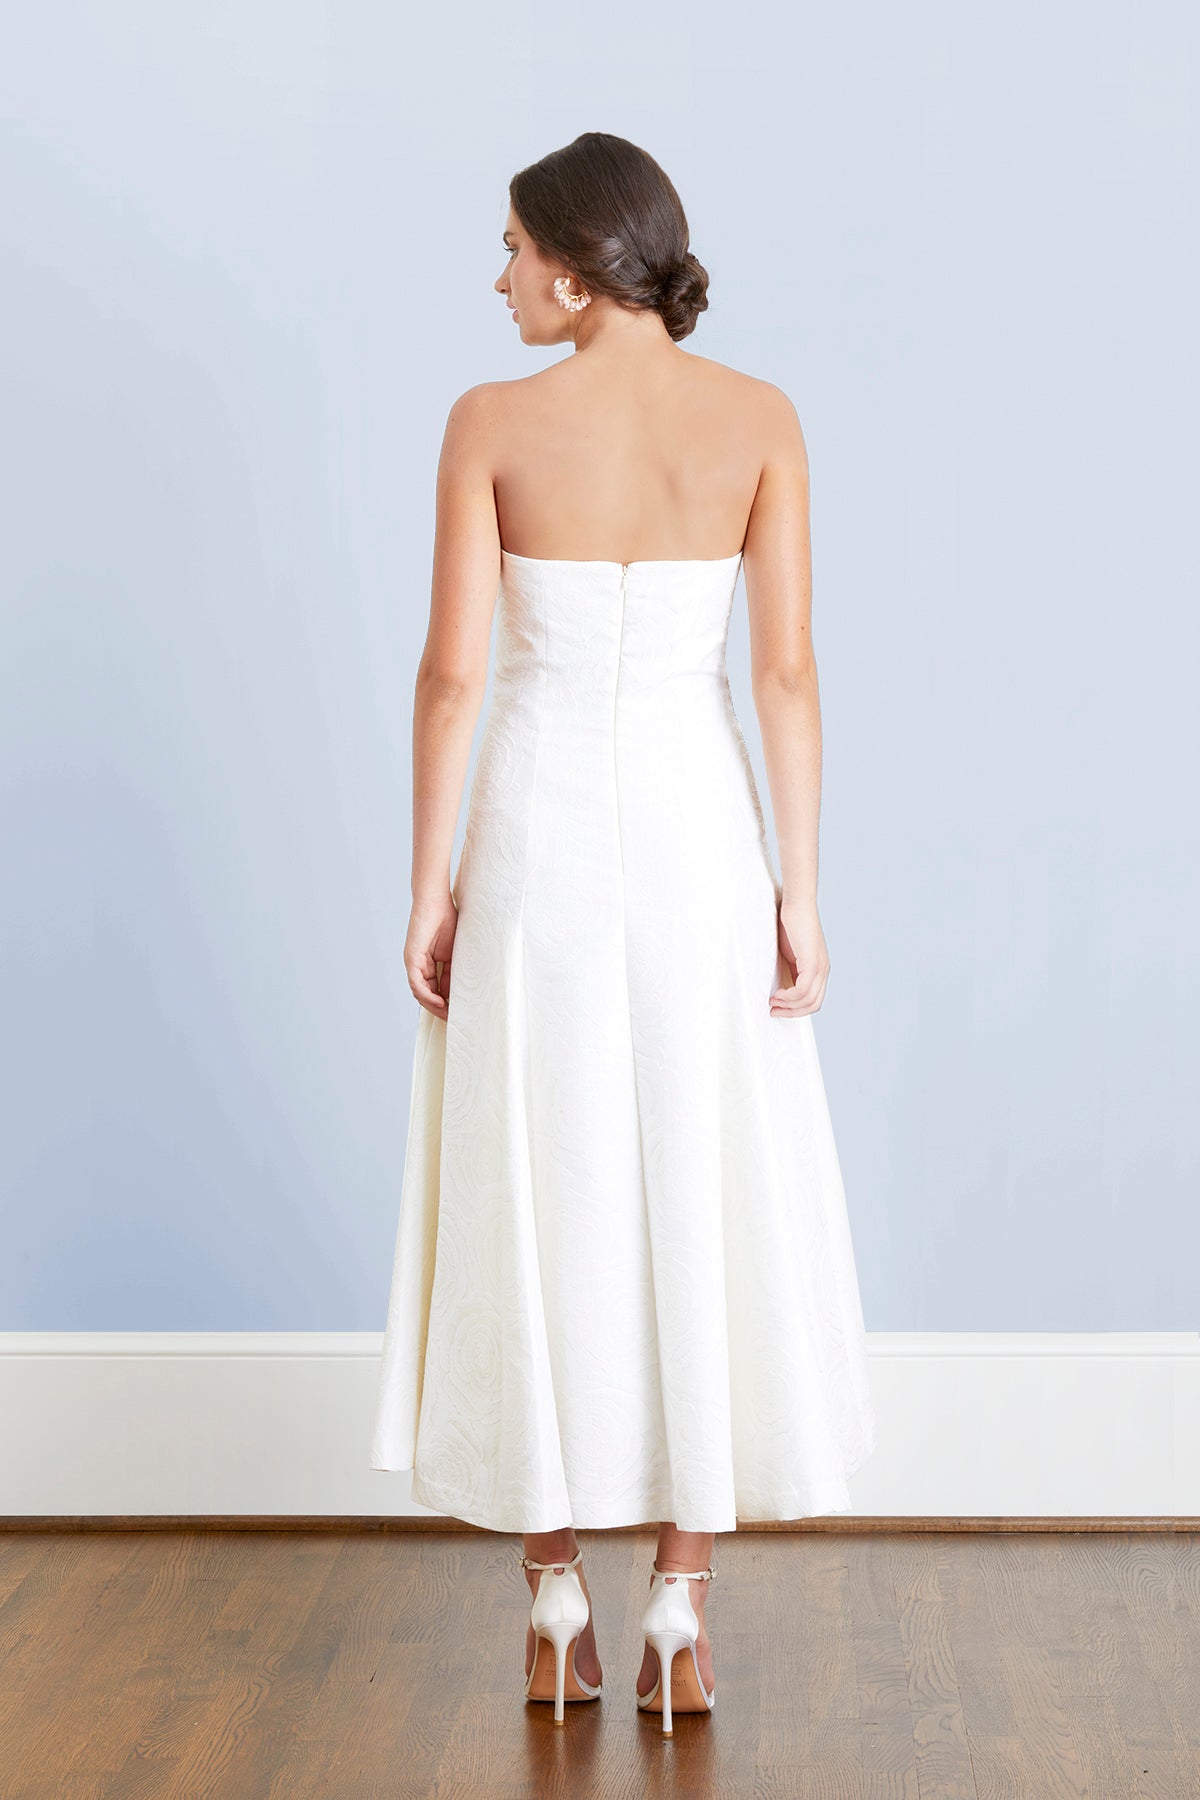 white t length dress